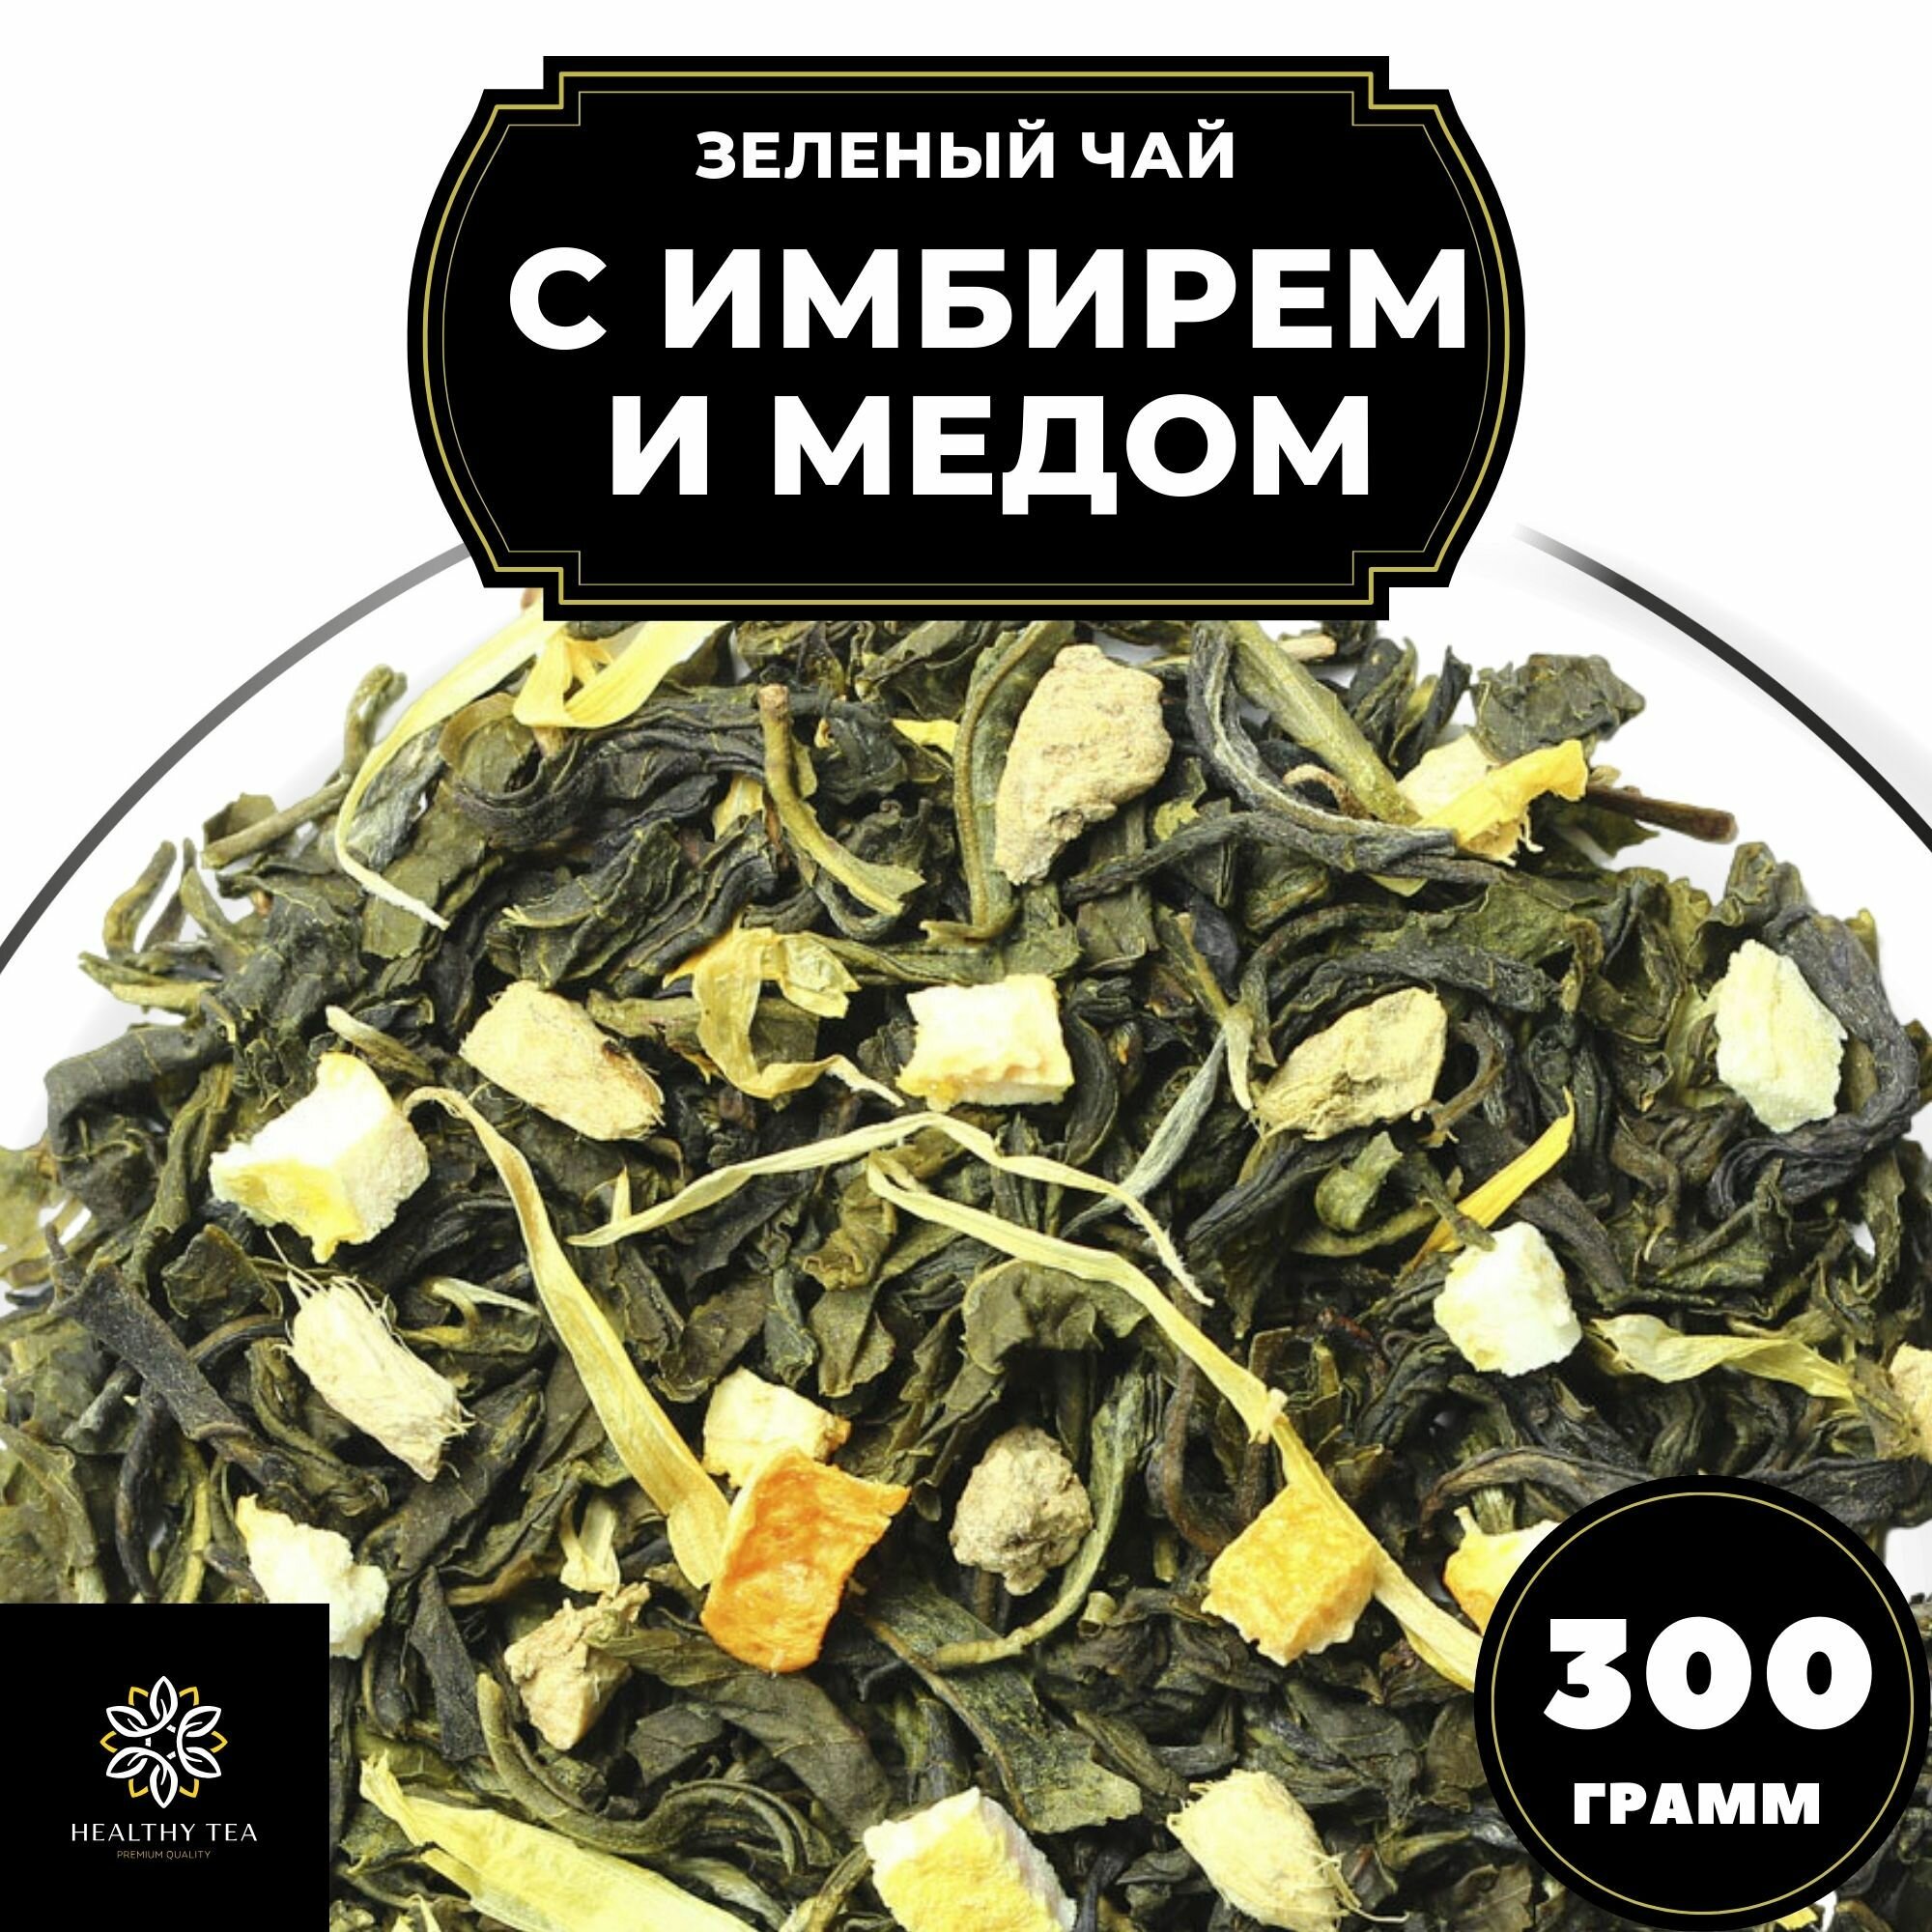 Китайский Зеленый чай с имбирем, лимоном и апельсином Имбирь-Мед Полезный чай / HEALTHY TEA, 300 г